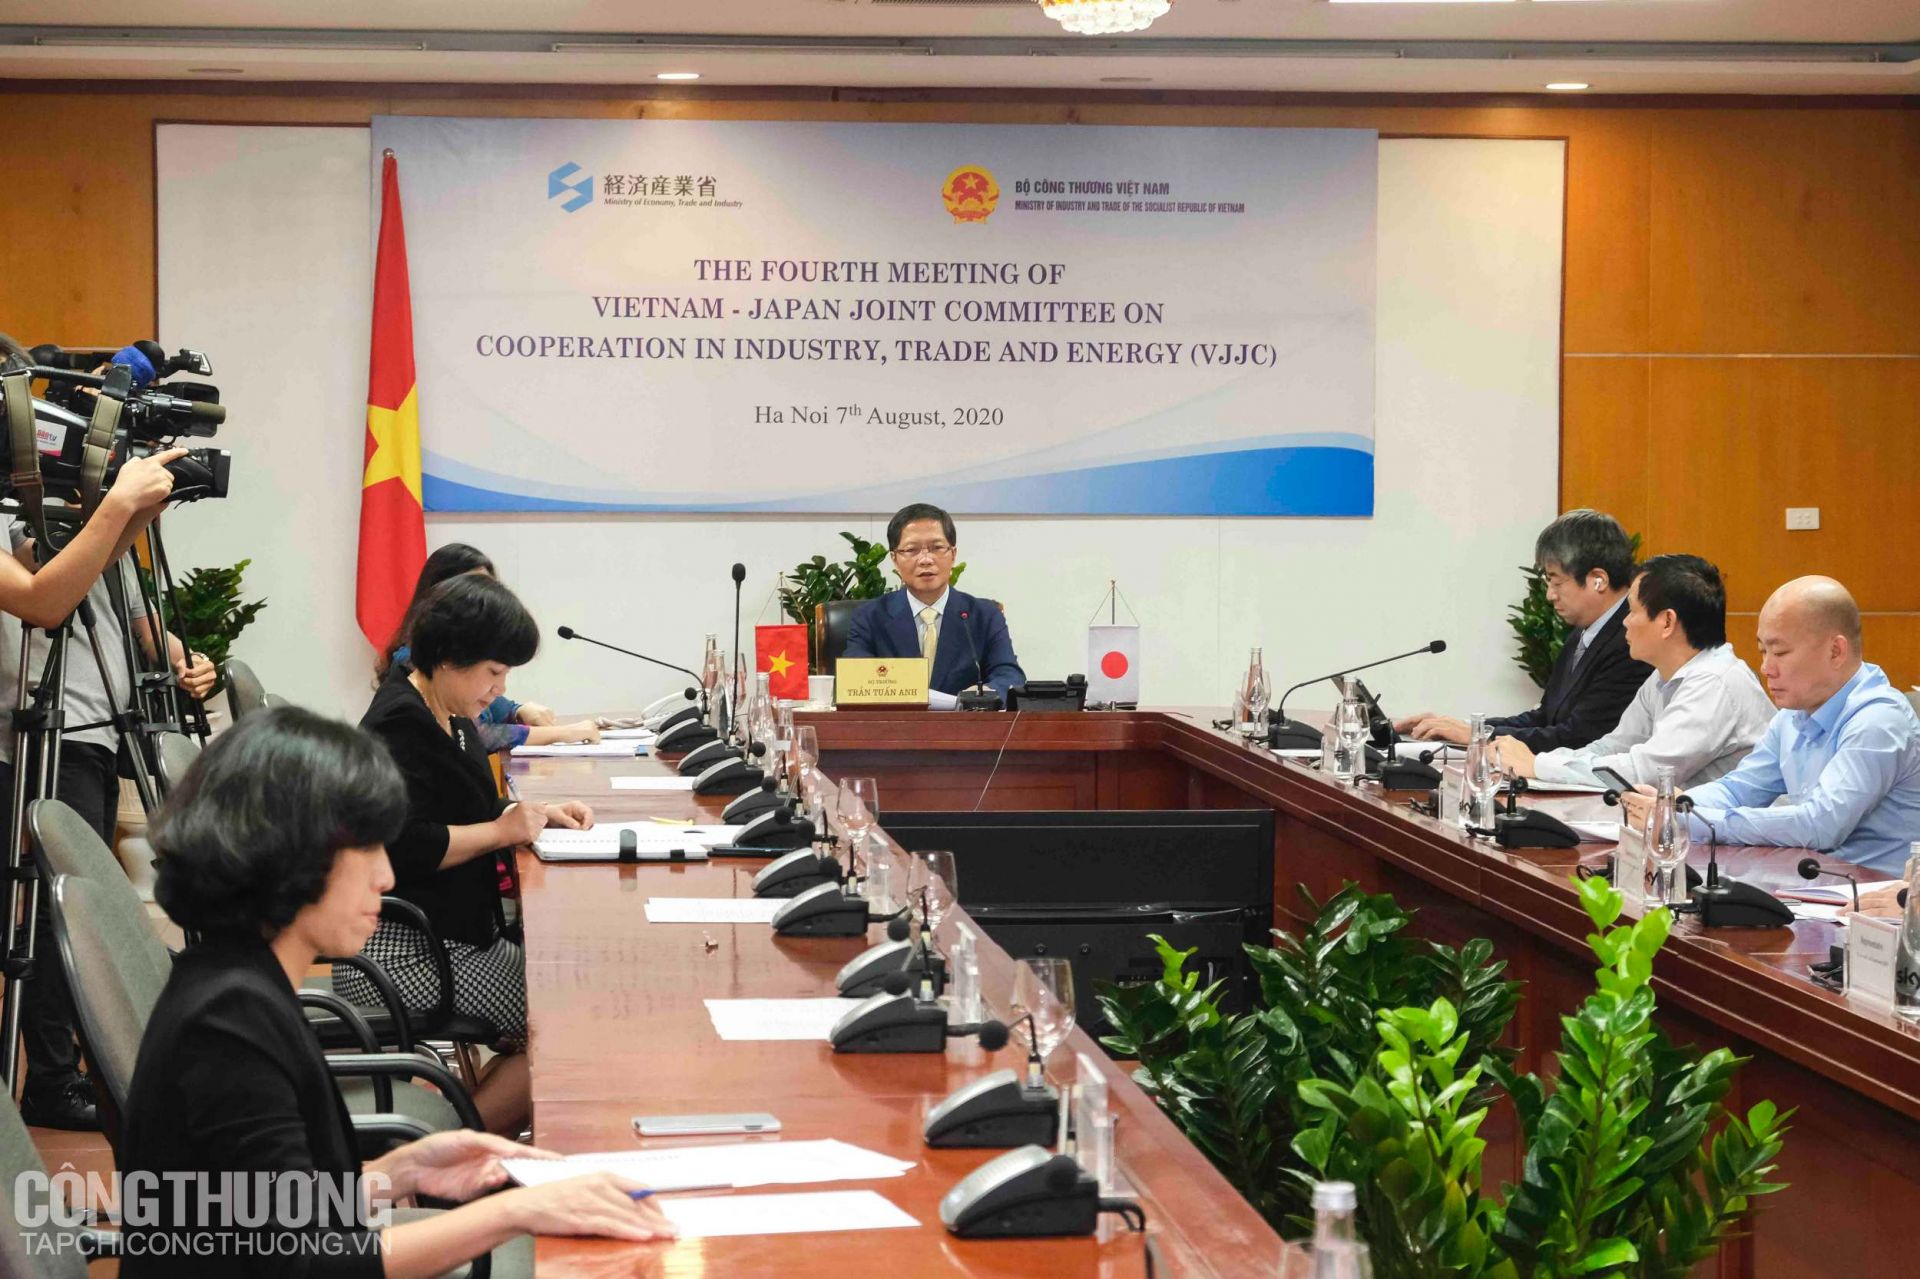 Kỳ họp lần thứ 4 Ủy ban hỗn hợp Việt Nam - Nhật Bản về hợp tác Công nghiệp, Thương mại và Năng lượng